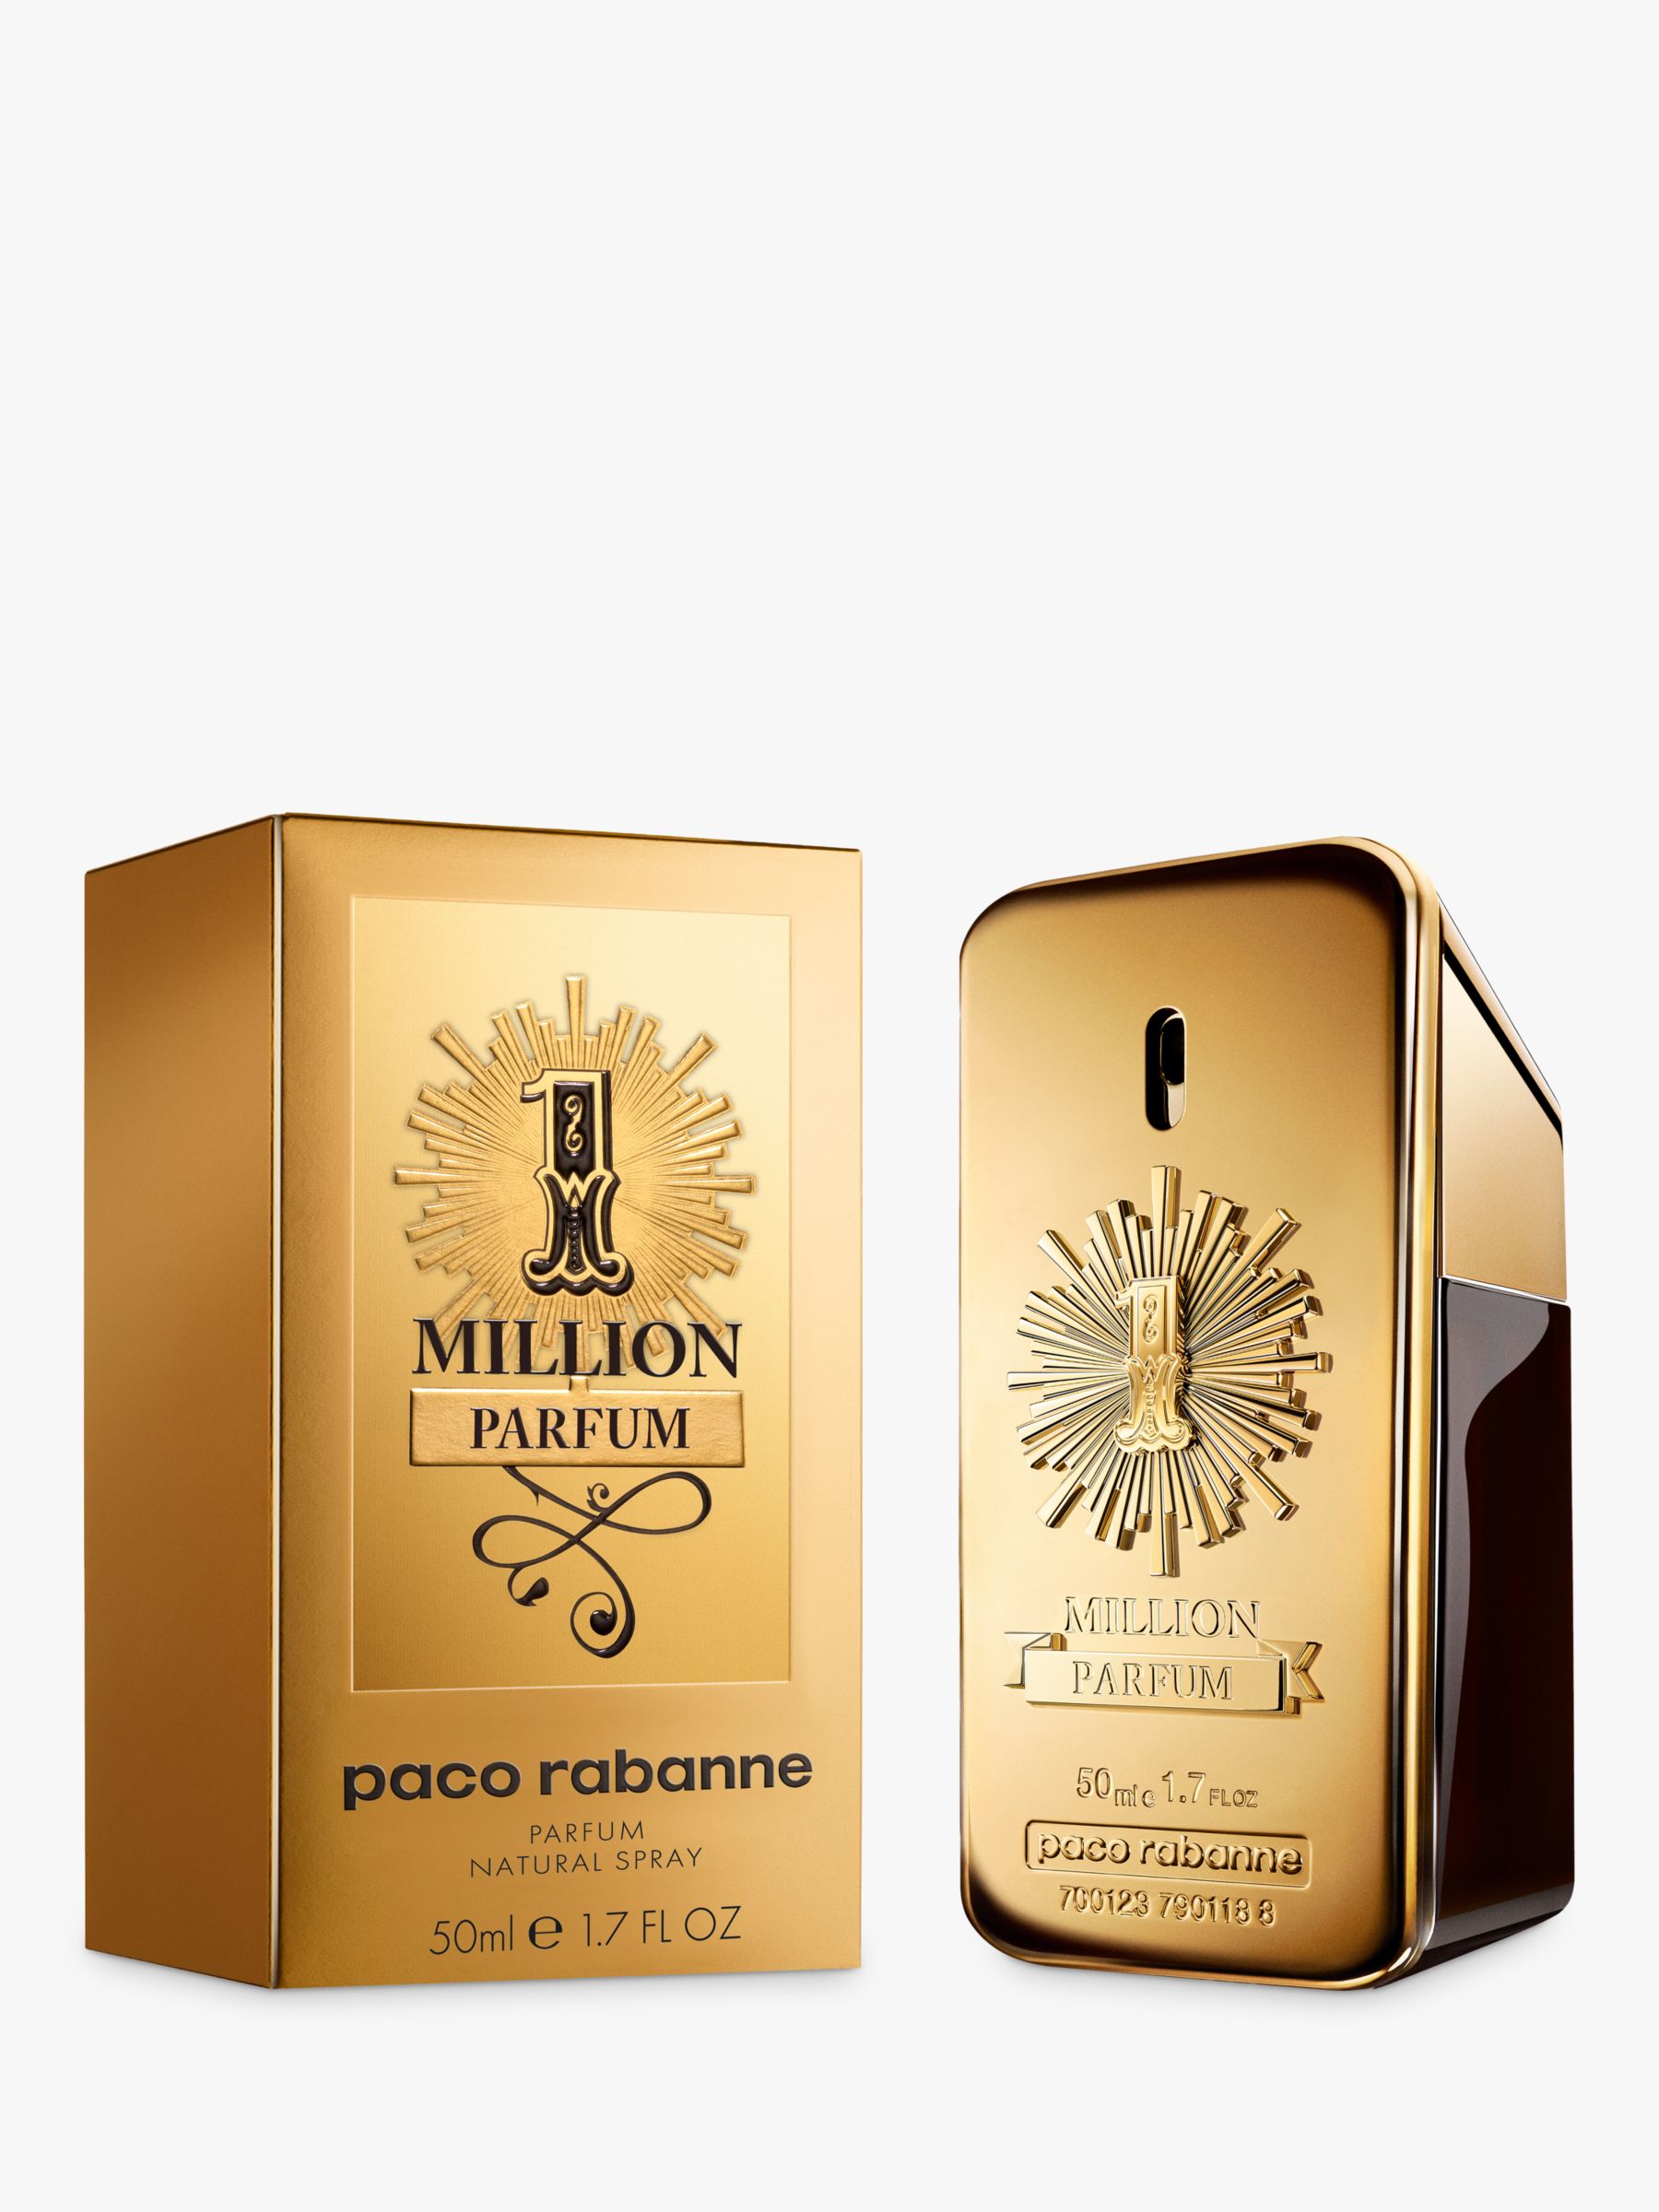 paco rabanne 1 million parfum